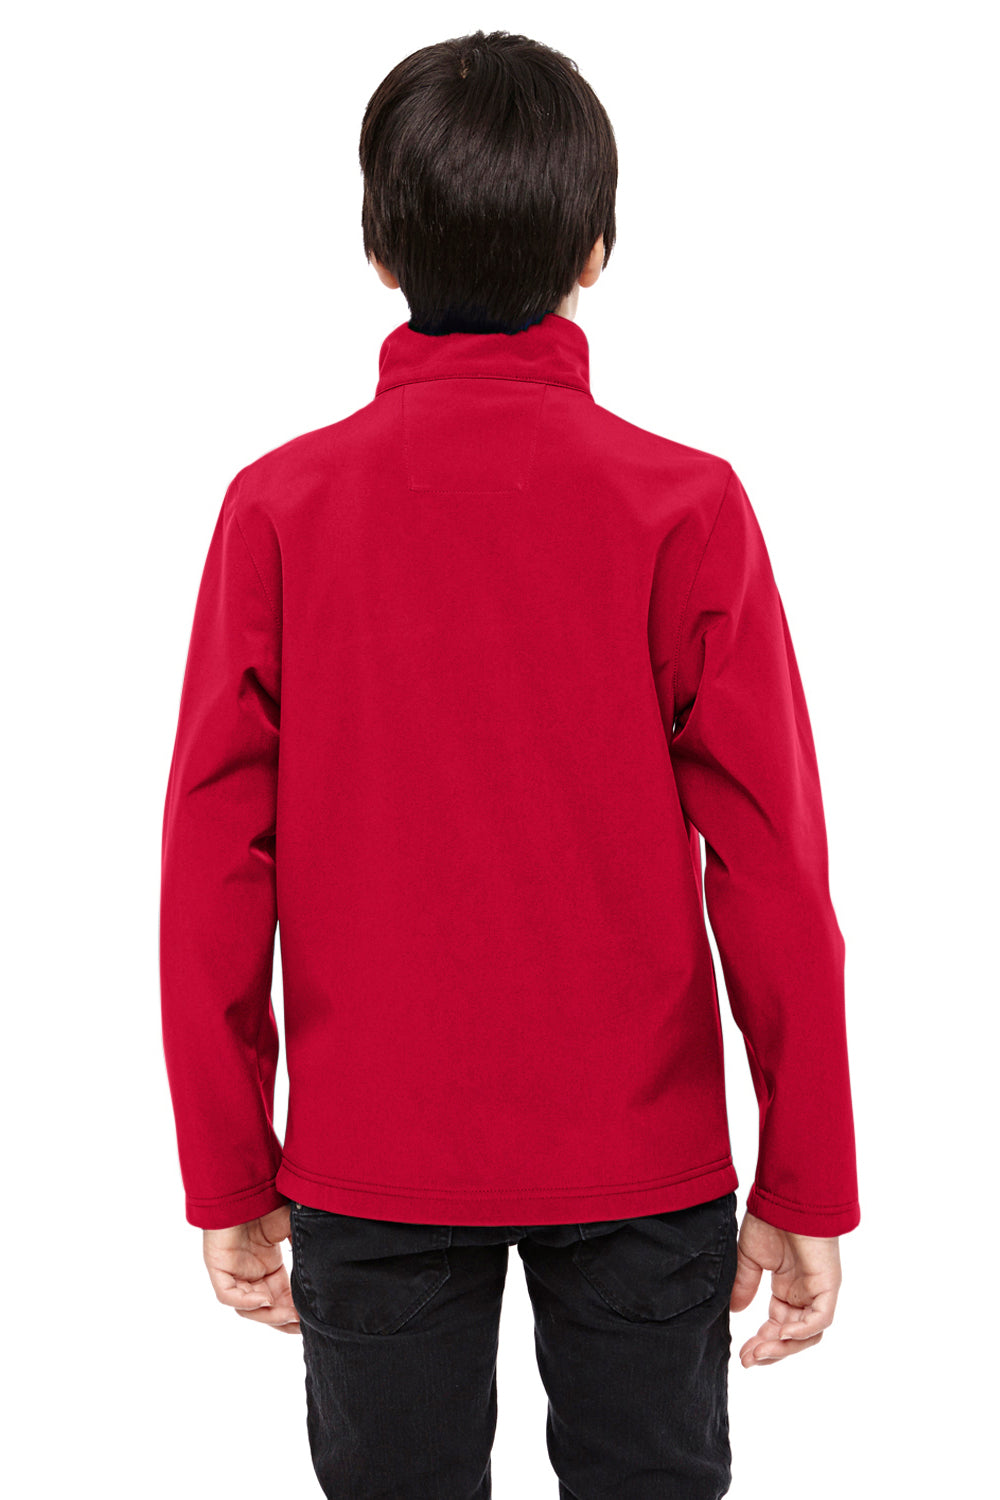 Team 365 TT80Y Youth Leader Waterproof Full Zip Jacket Red Back